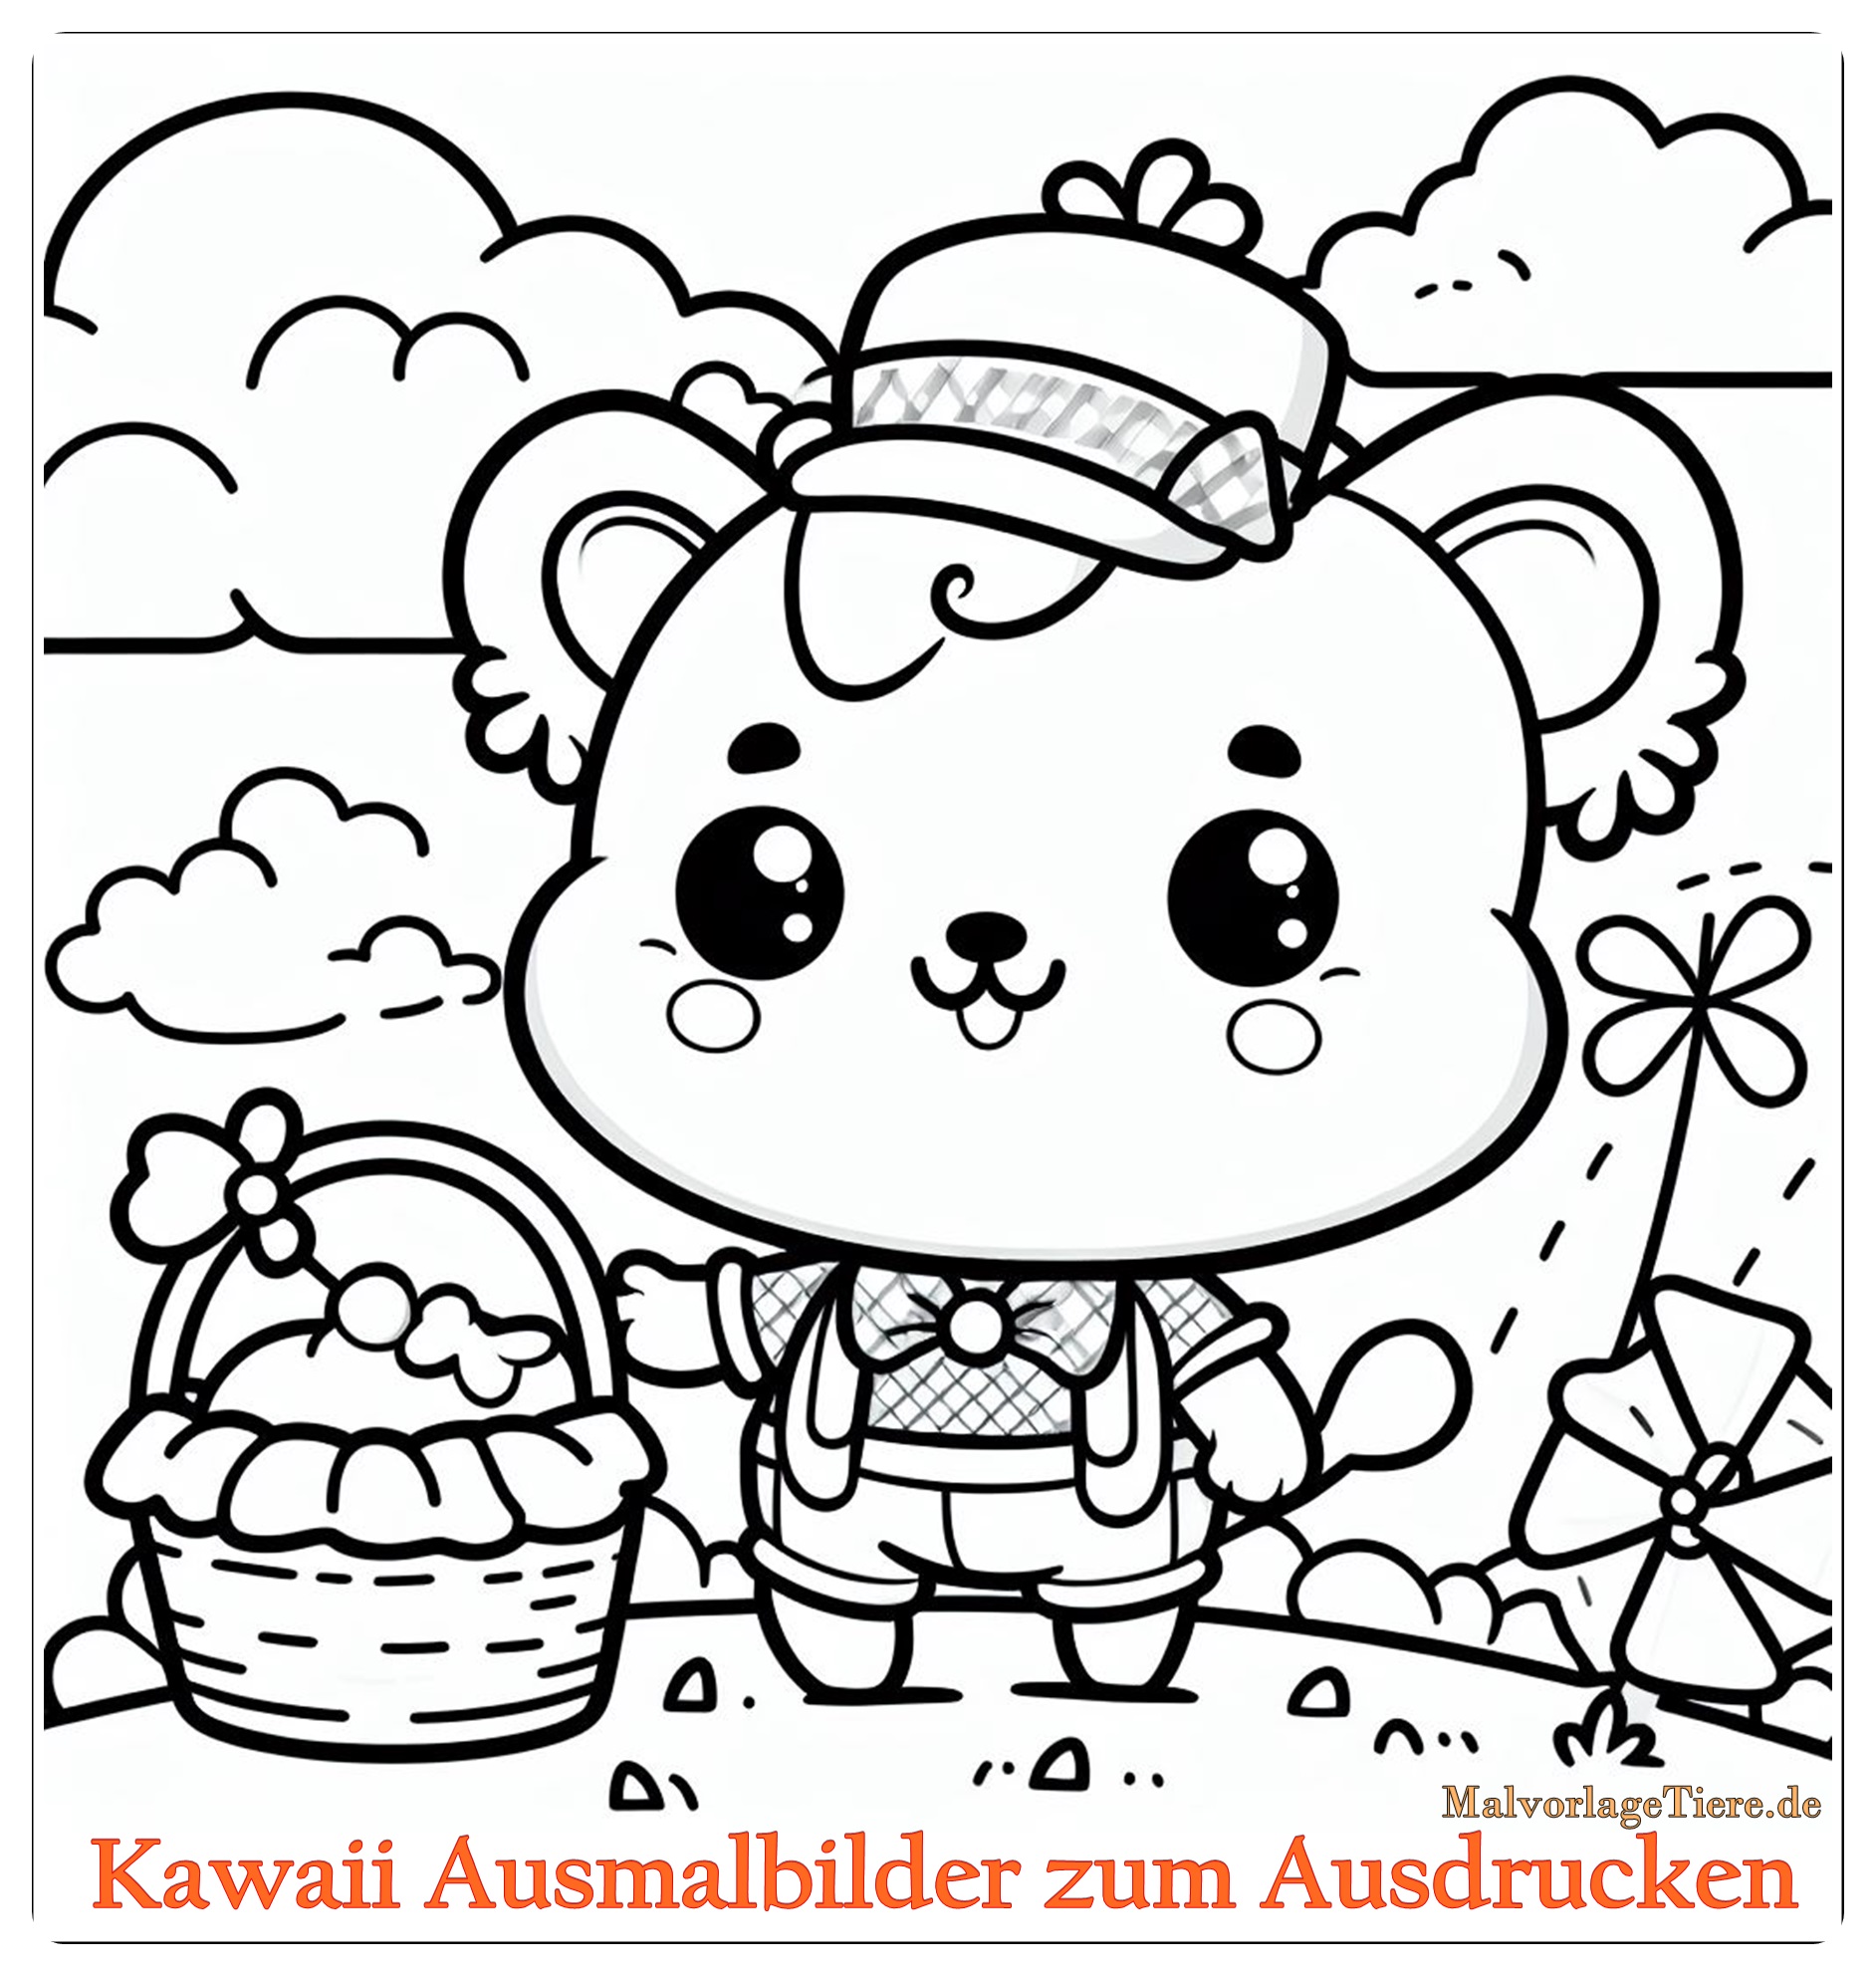 Kawaii Ausmalbilder zum Ausdrucken: Süße Vorlagen für Kinder